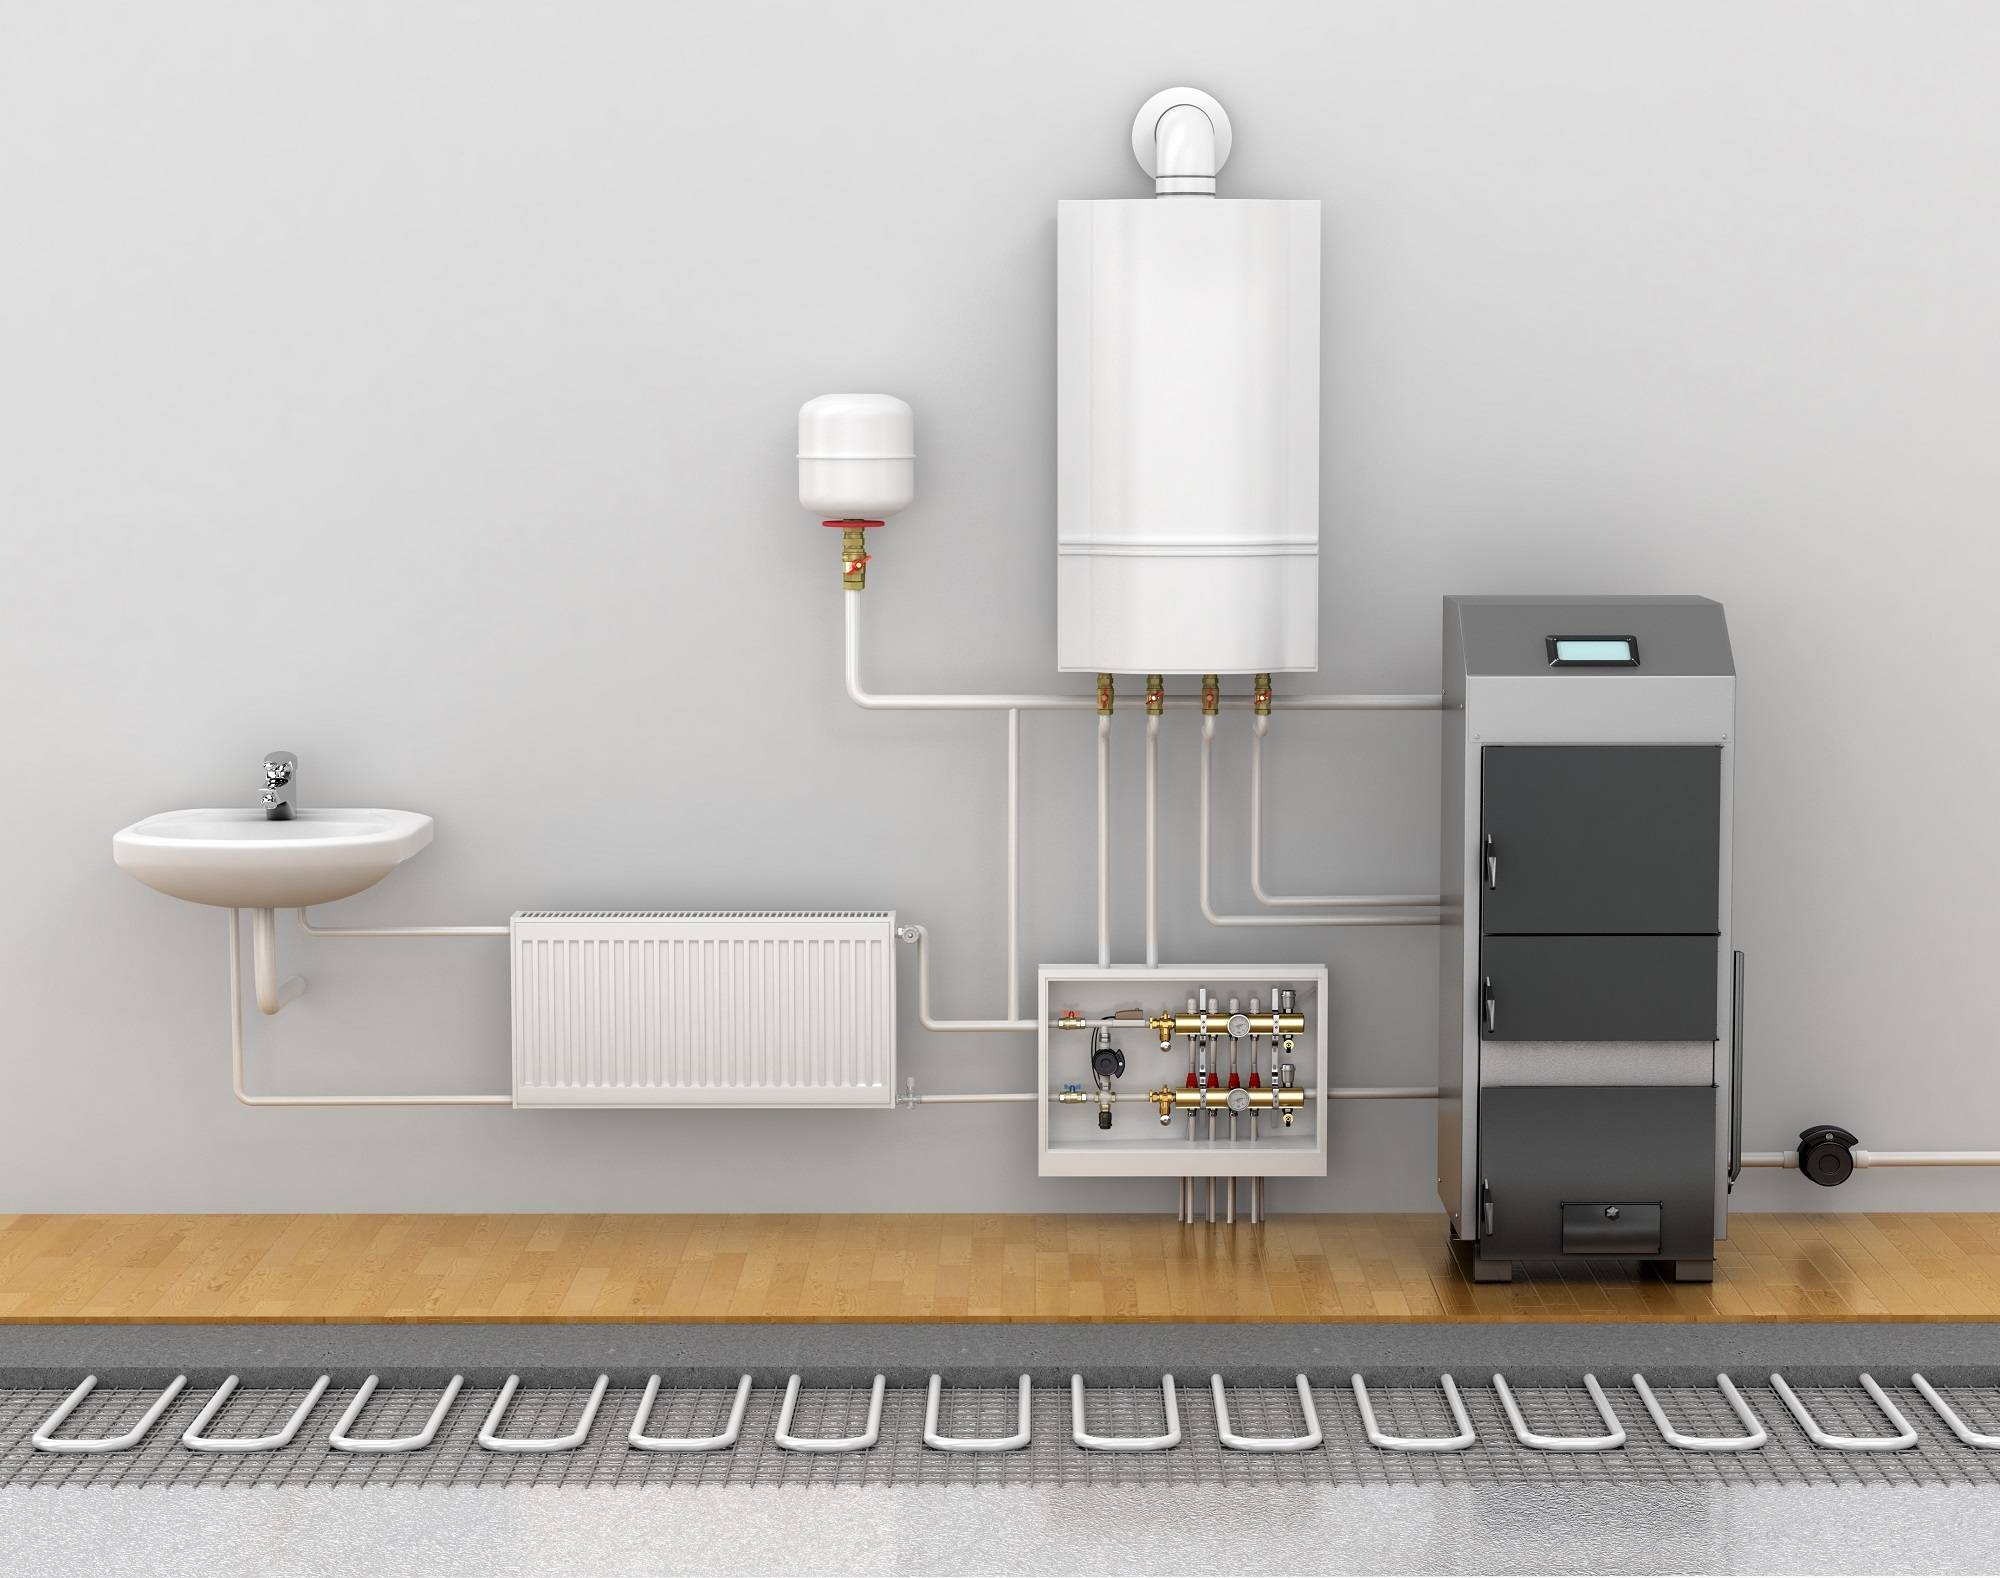 Автономное отопление в квартире — варианты организации системы